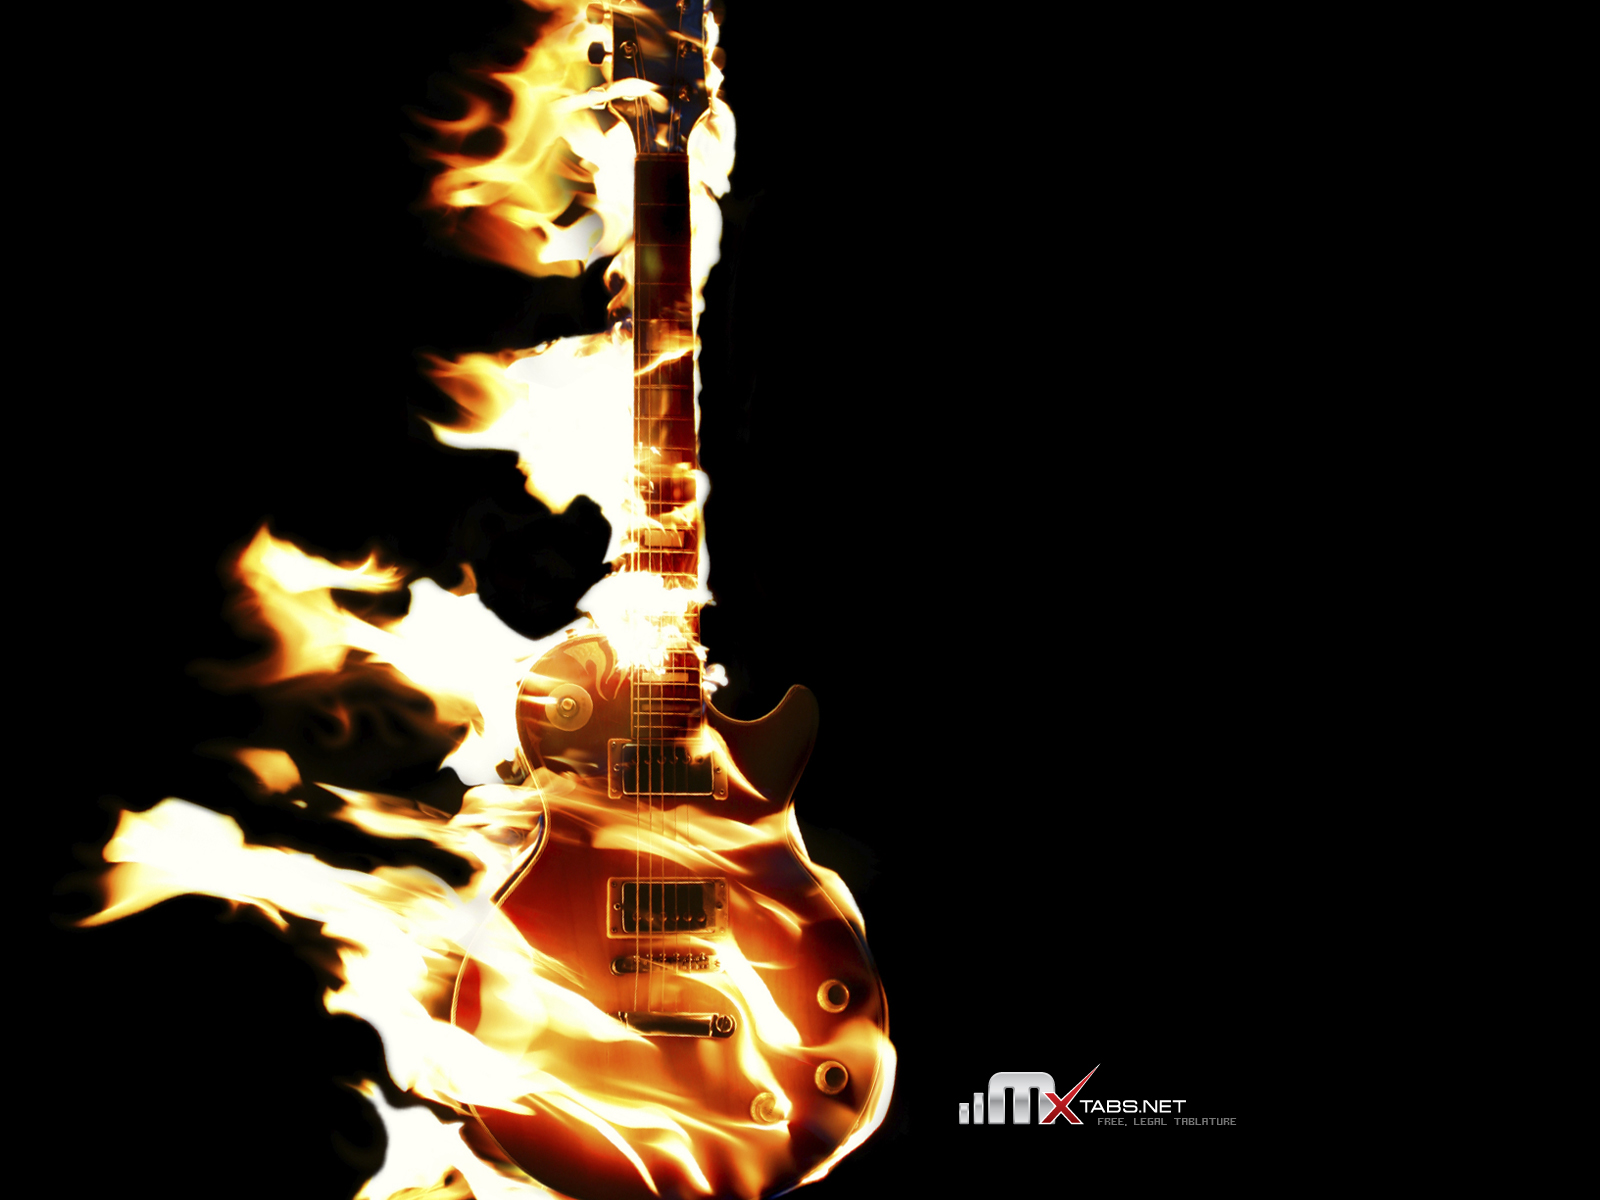 http://2.bp.blogspot.com/-_pRnfES8j20/TgkRF1Xte3I/AAAAAAAAAzk/GLUnynxfmcM/s1600/Guitar+on+Fire.jpg